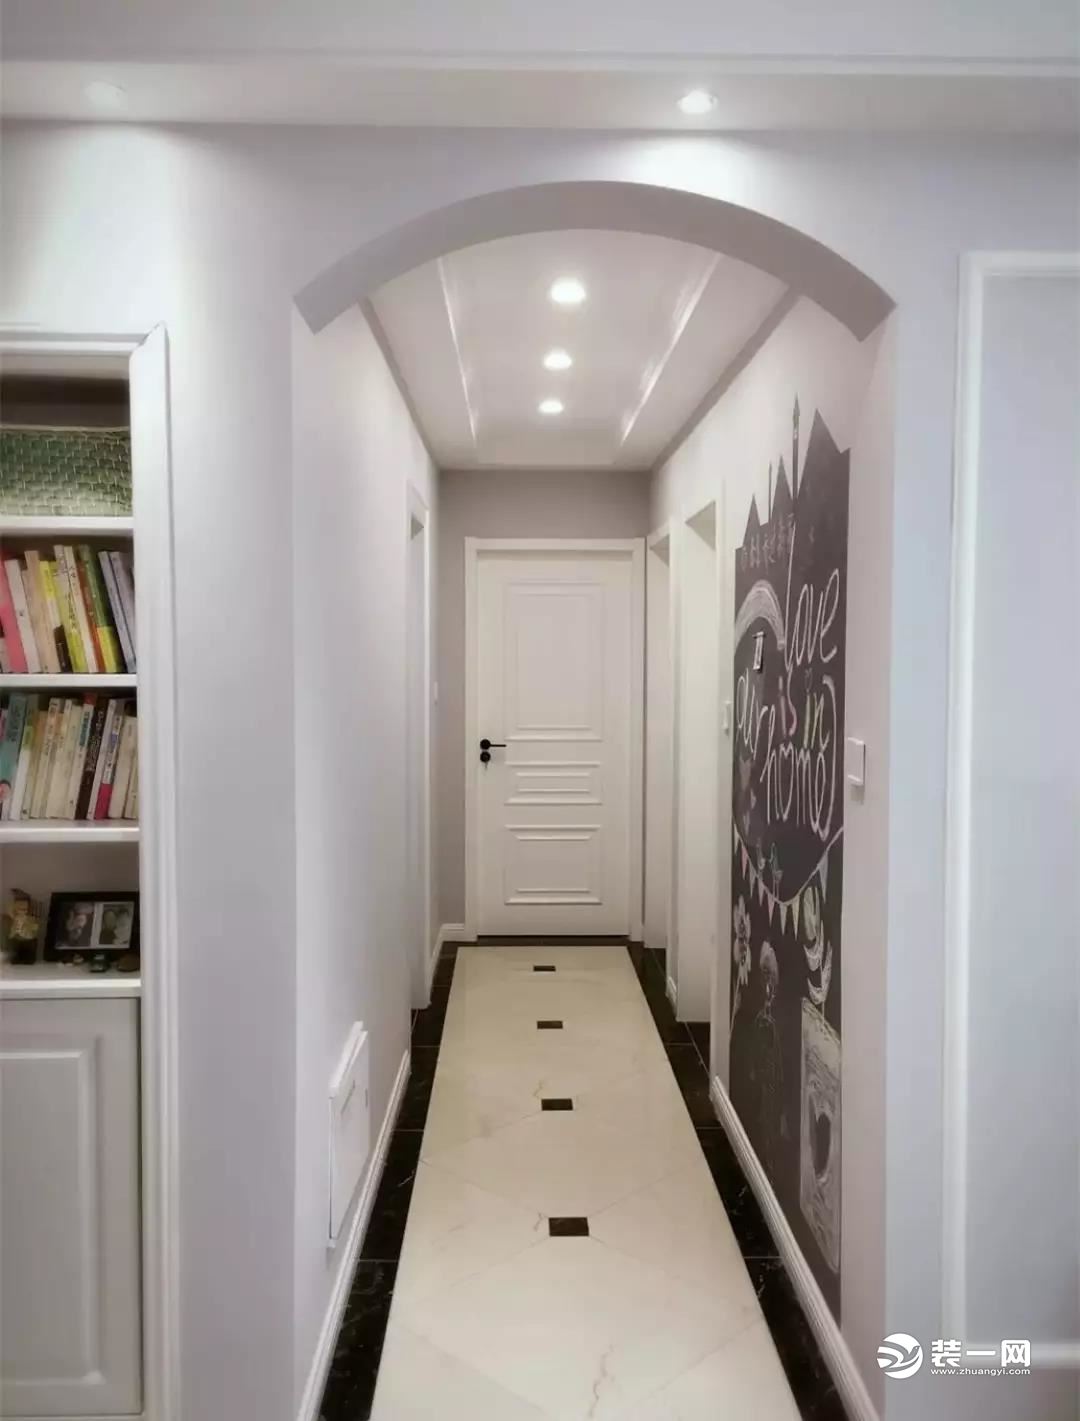 走廊地面瓷砖装修效果图